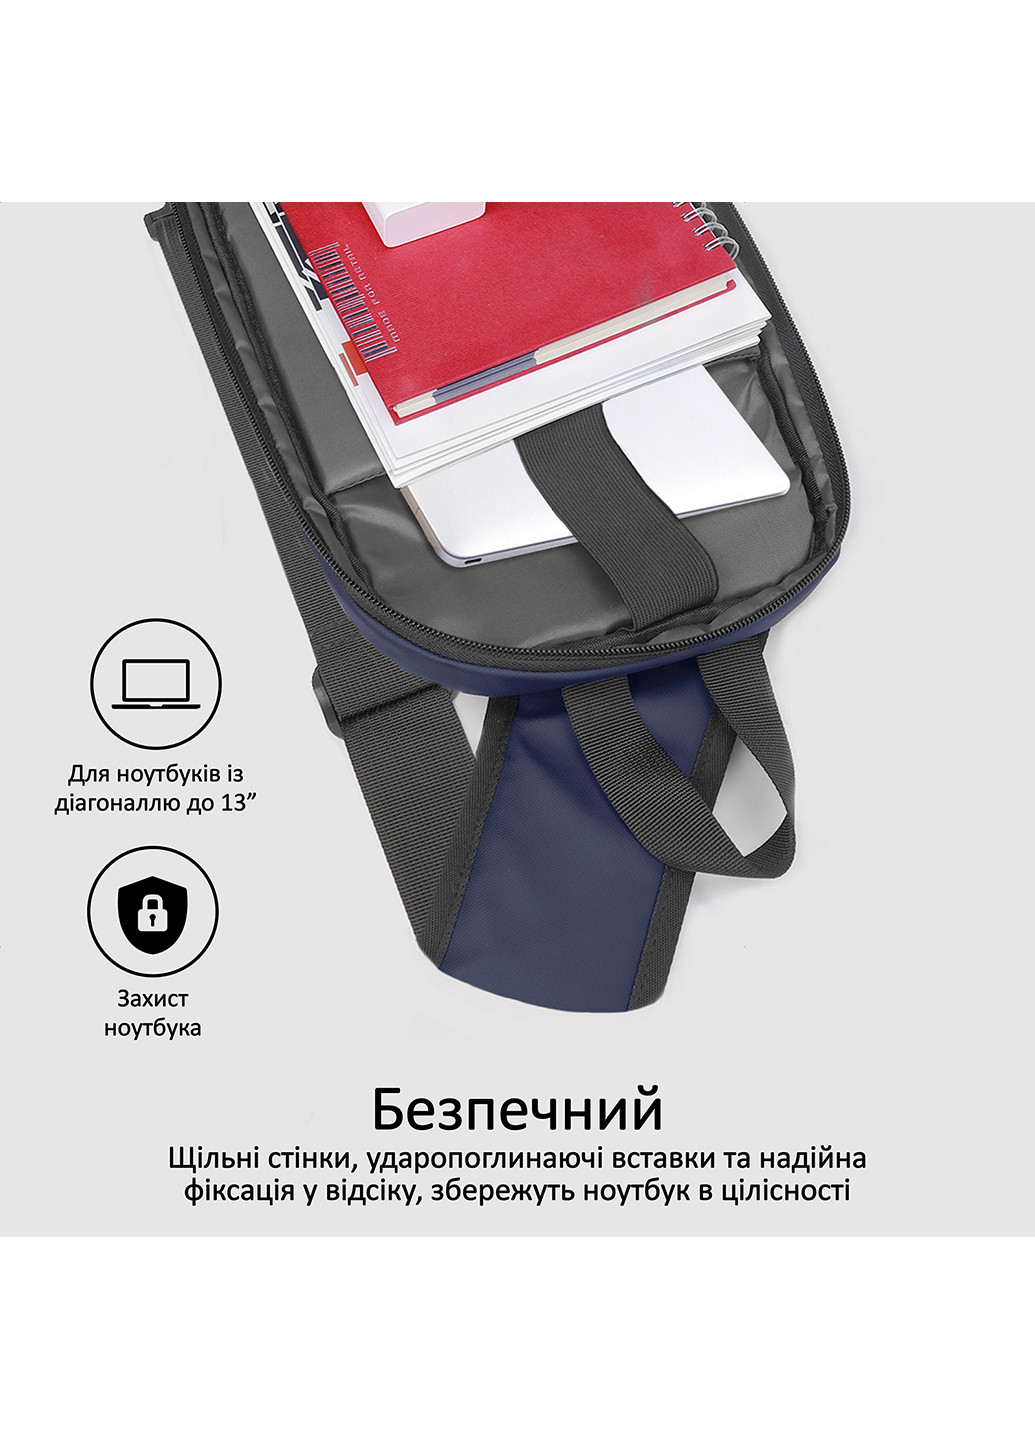 Рюкзак для ноутбука TrekPack-SB 13" Promate trekpack-sb.blue (202118083)